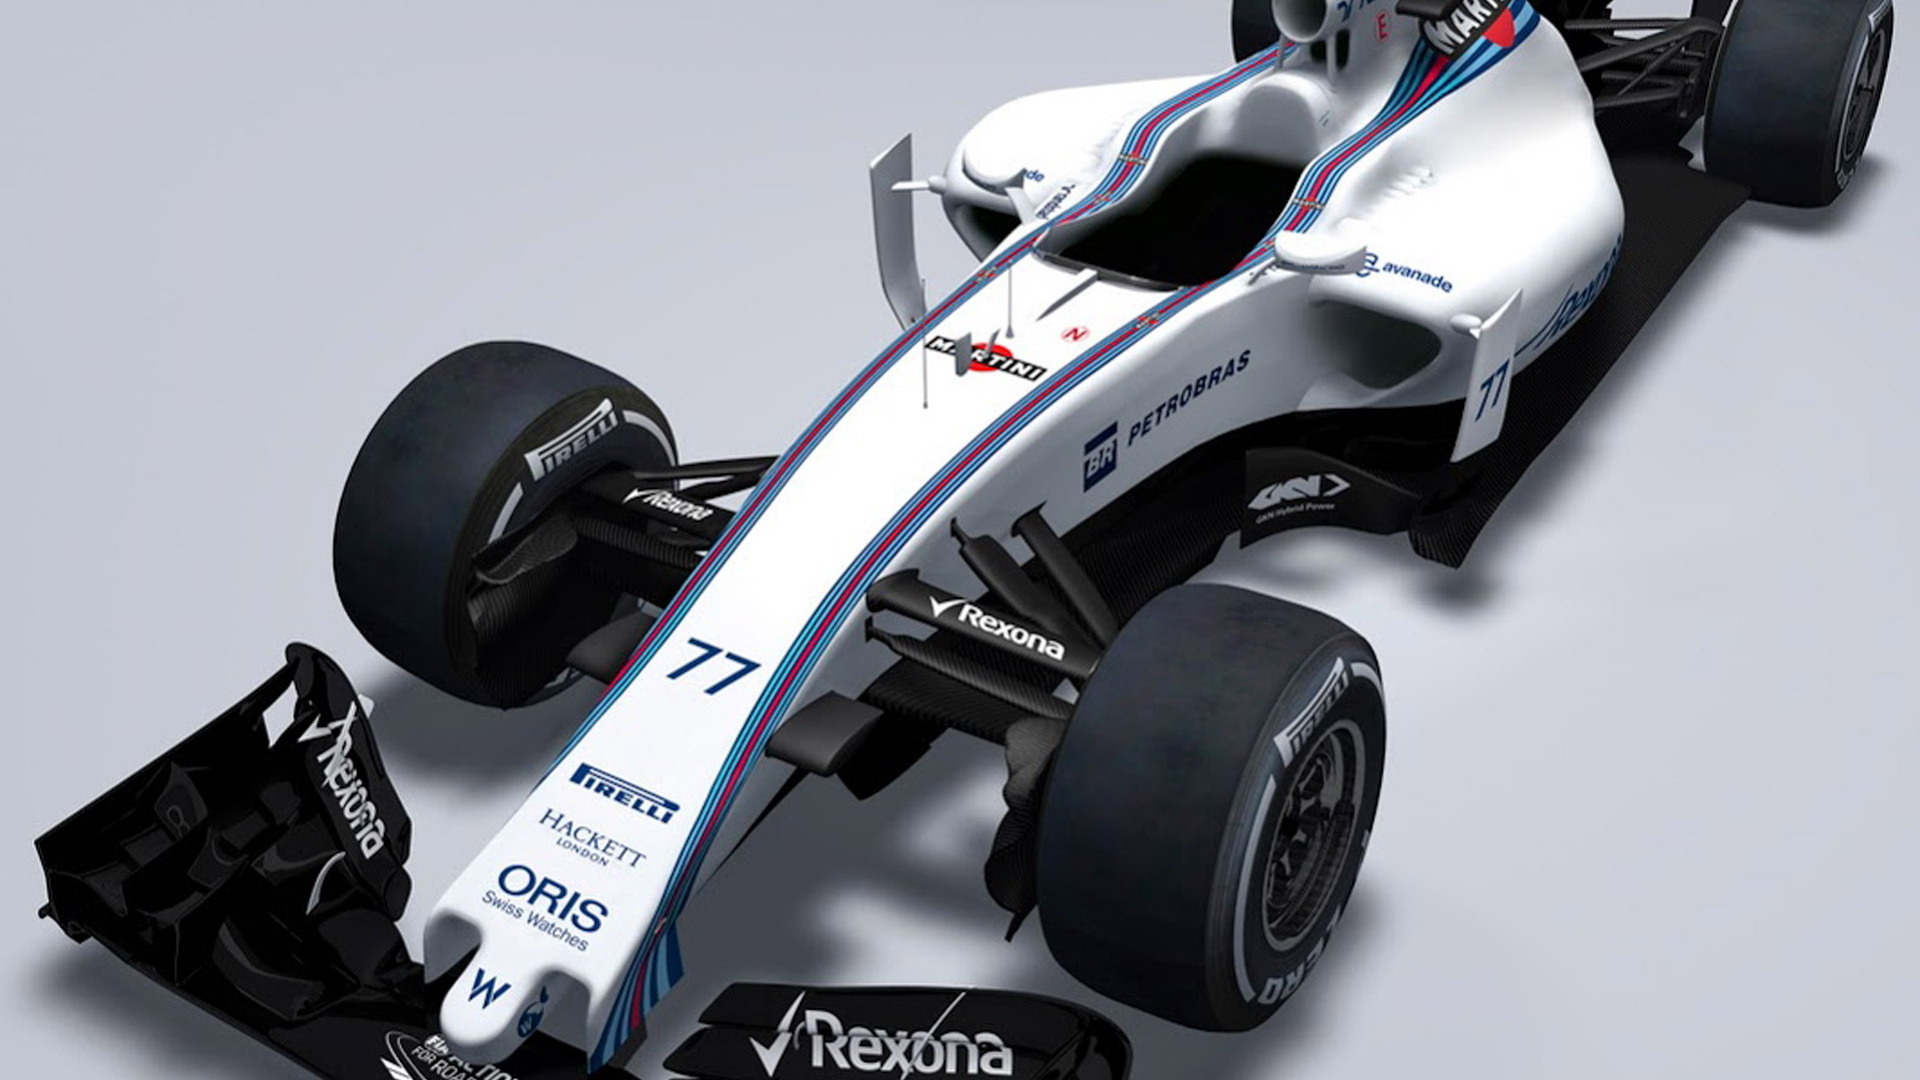 Williams FW37 2015 Formula One car